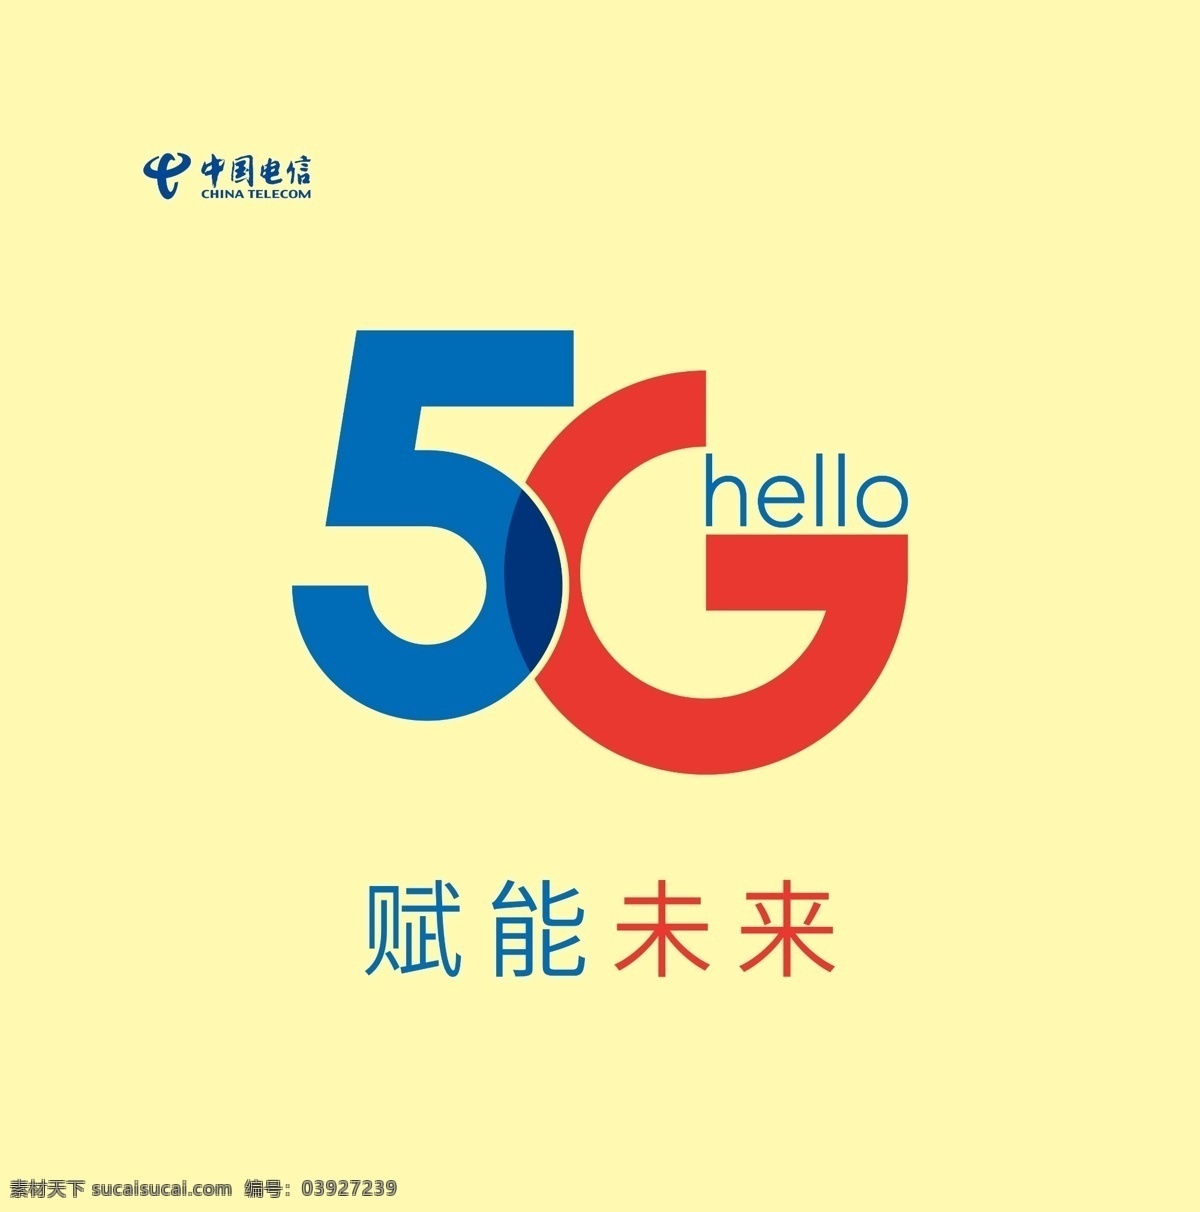 5g标志 赋能未来图片 电信5g 赋能未来 信号覆盖 logo 电信logo 5g 电信标志 展板模板